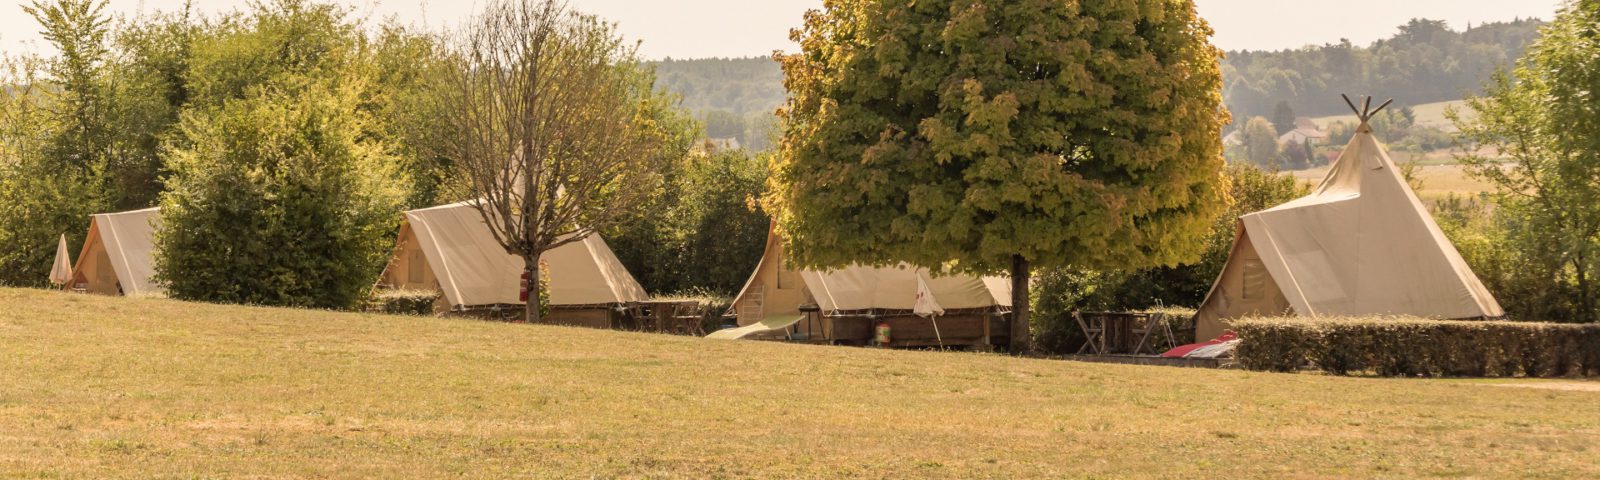 Camping en Tente Tipi - camping atypique dans la Vienne en Poitou-Charentes